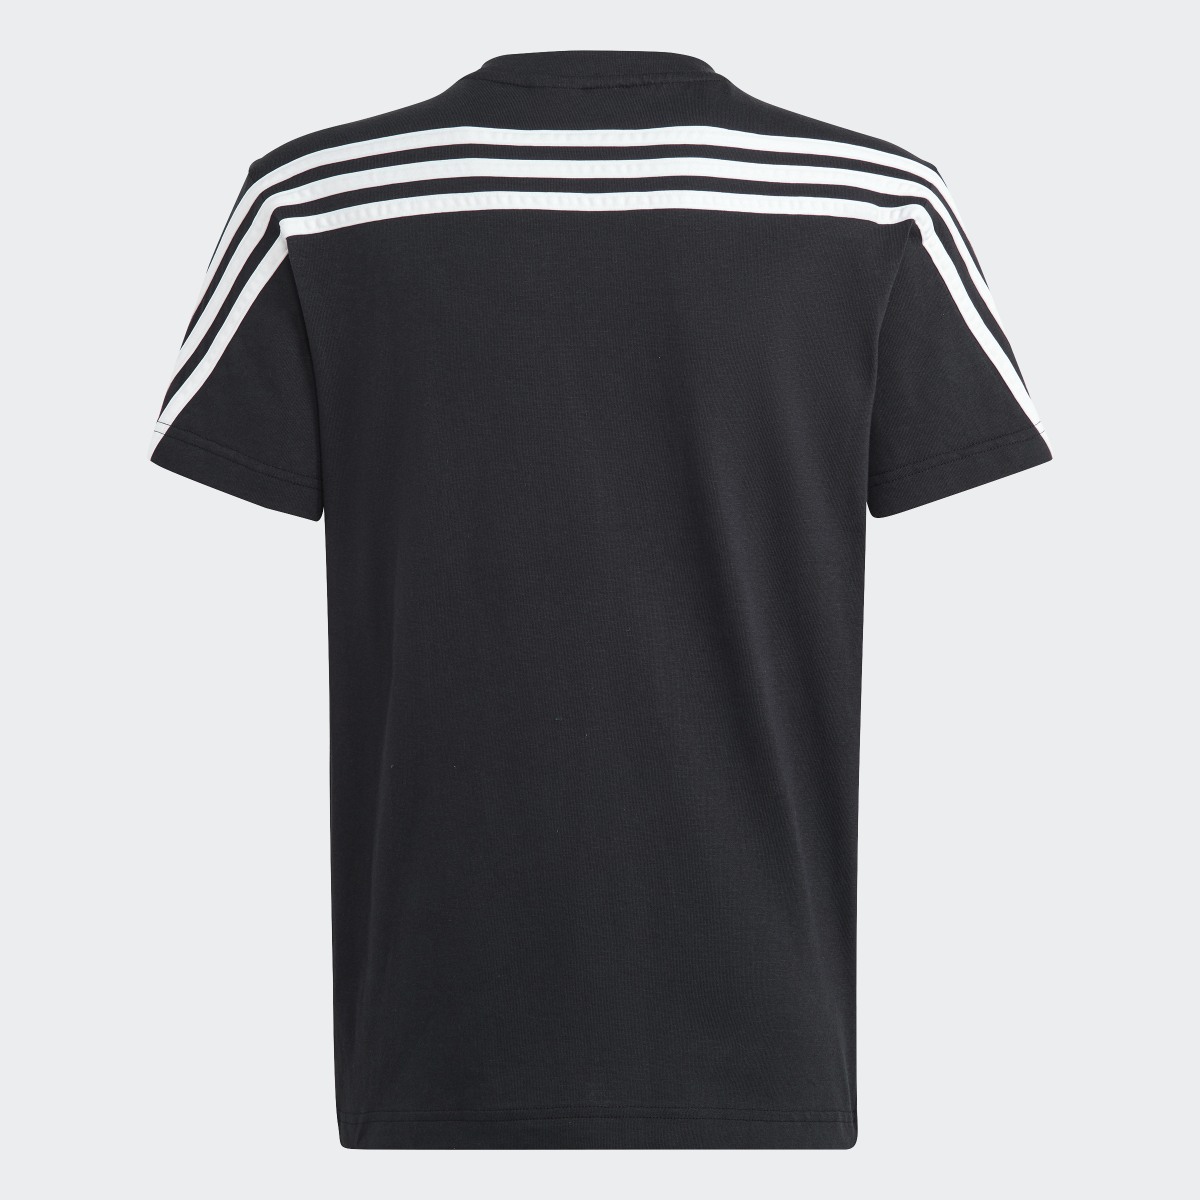 Adidas T-shirt Future Icons 3-Stripes. 4